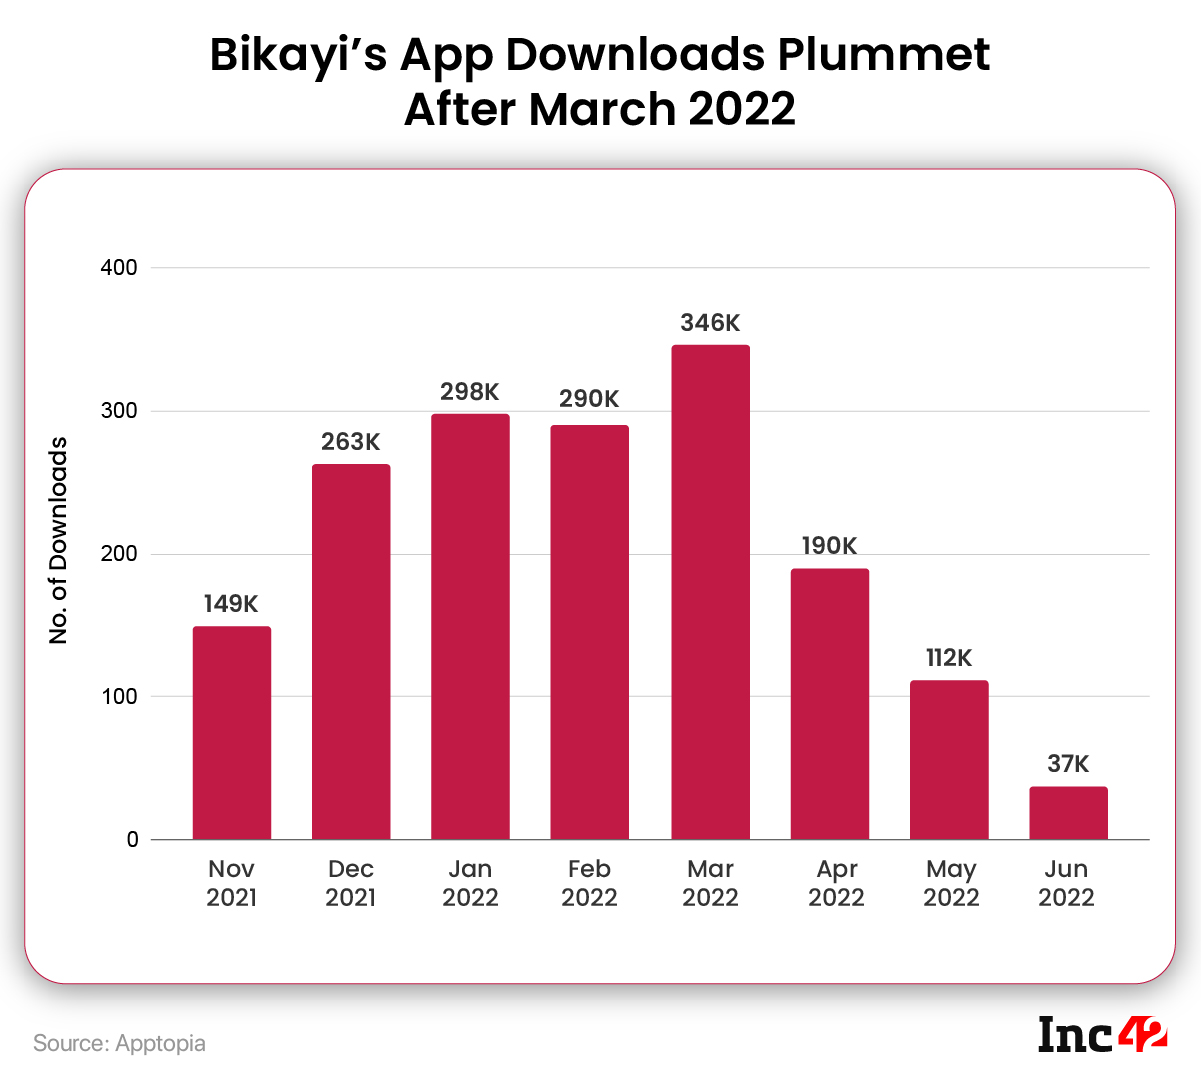 Bikayi App Downloads Plummet After March 2022